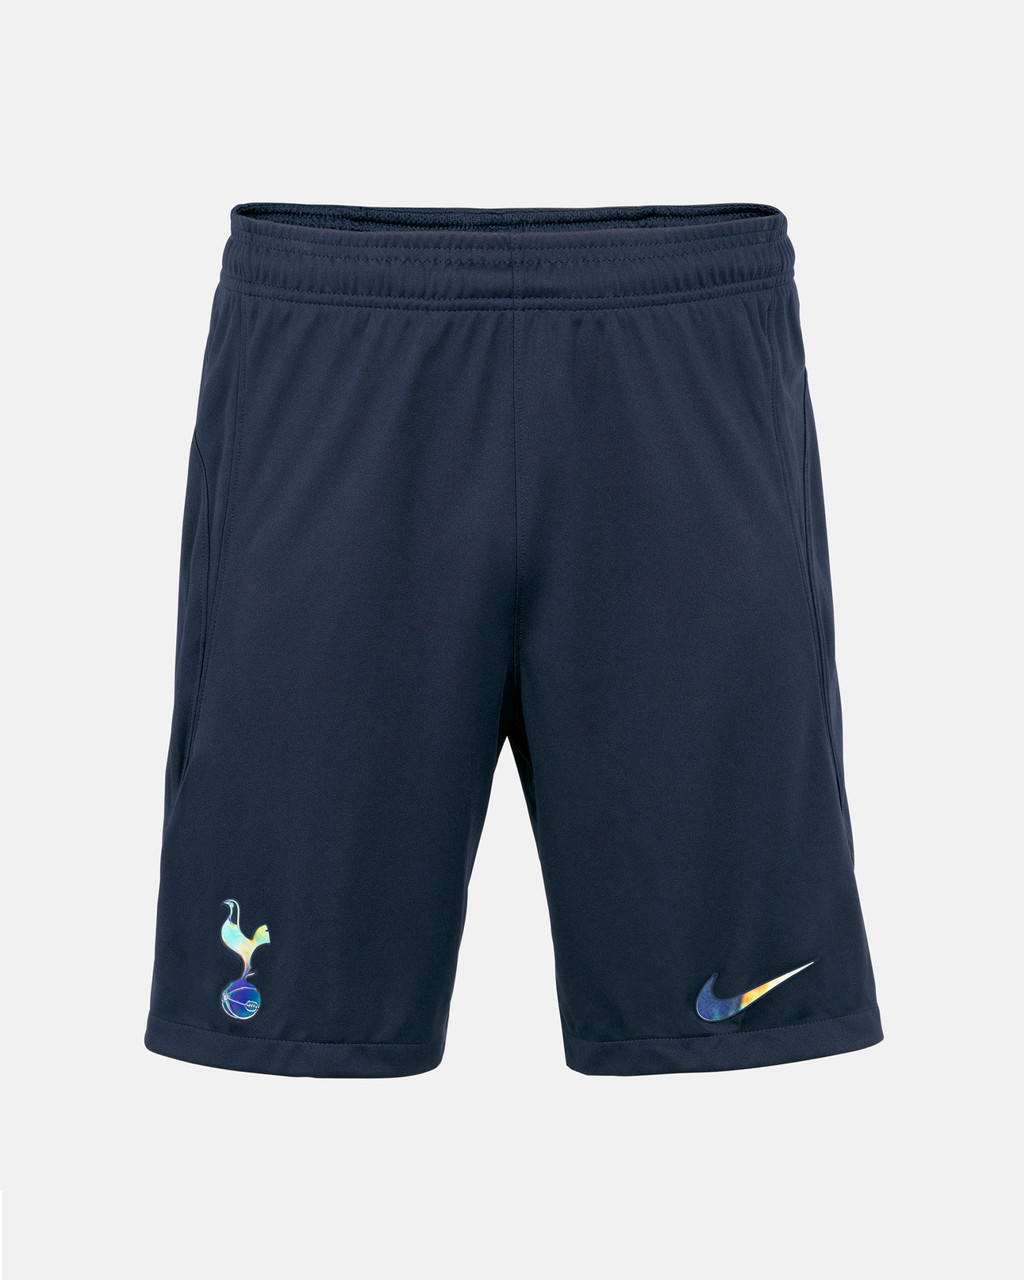 Son Heung-min Tottenham Hotspur 2023/24 Stadium Away Men's Nike Dri-Fit Soccer Jersey